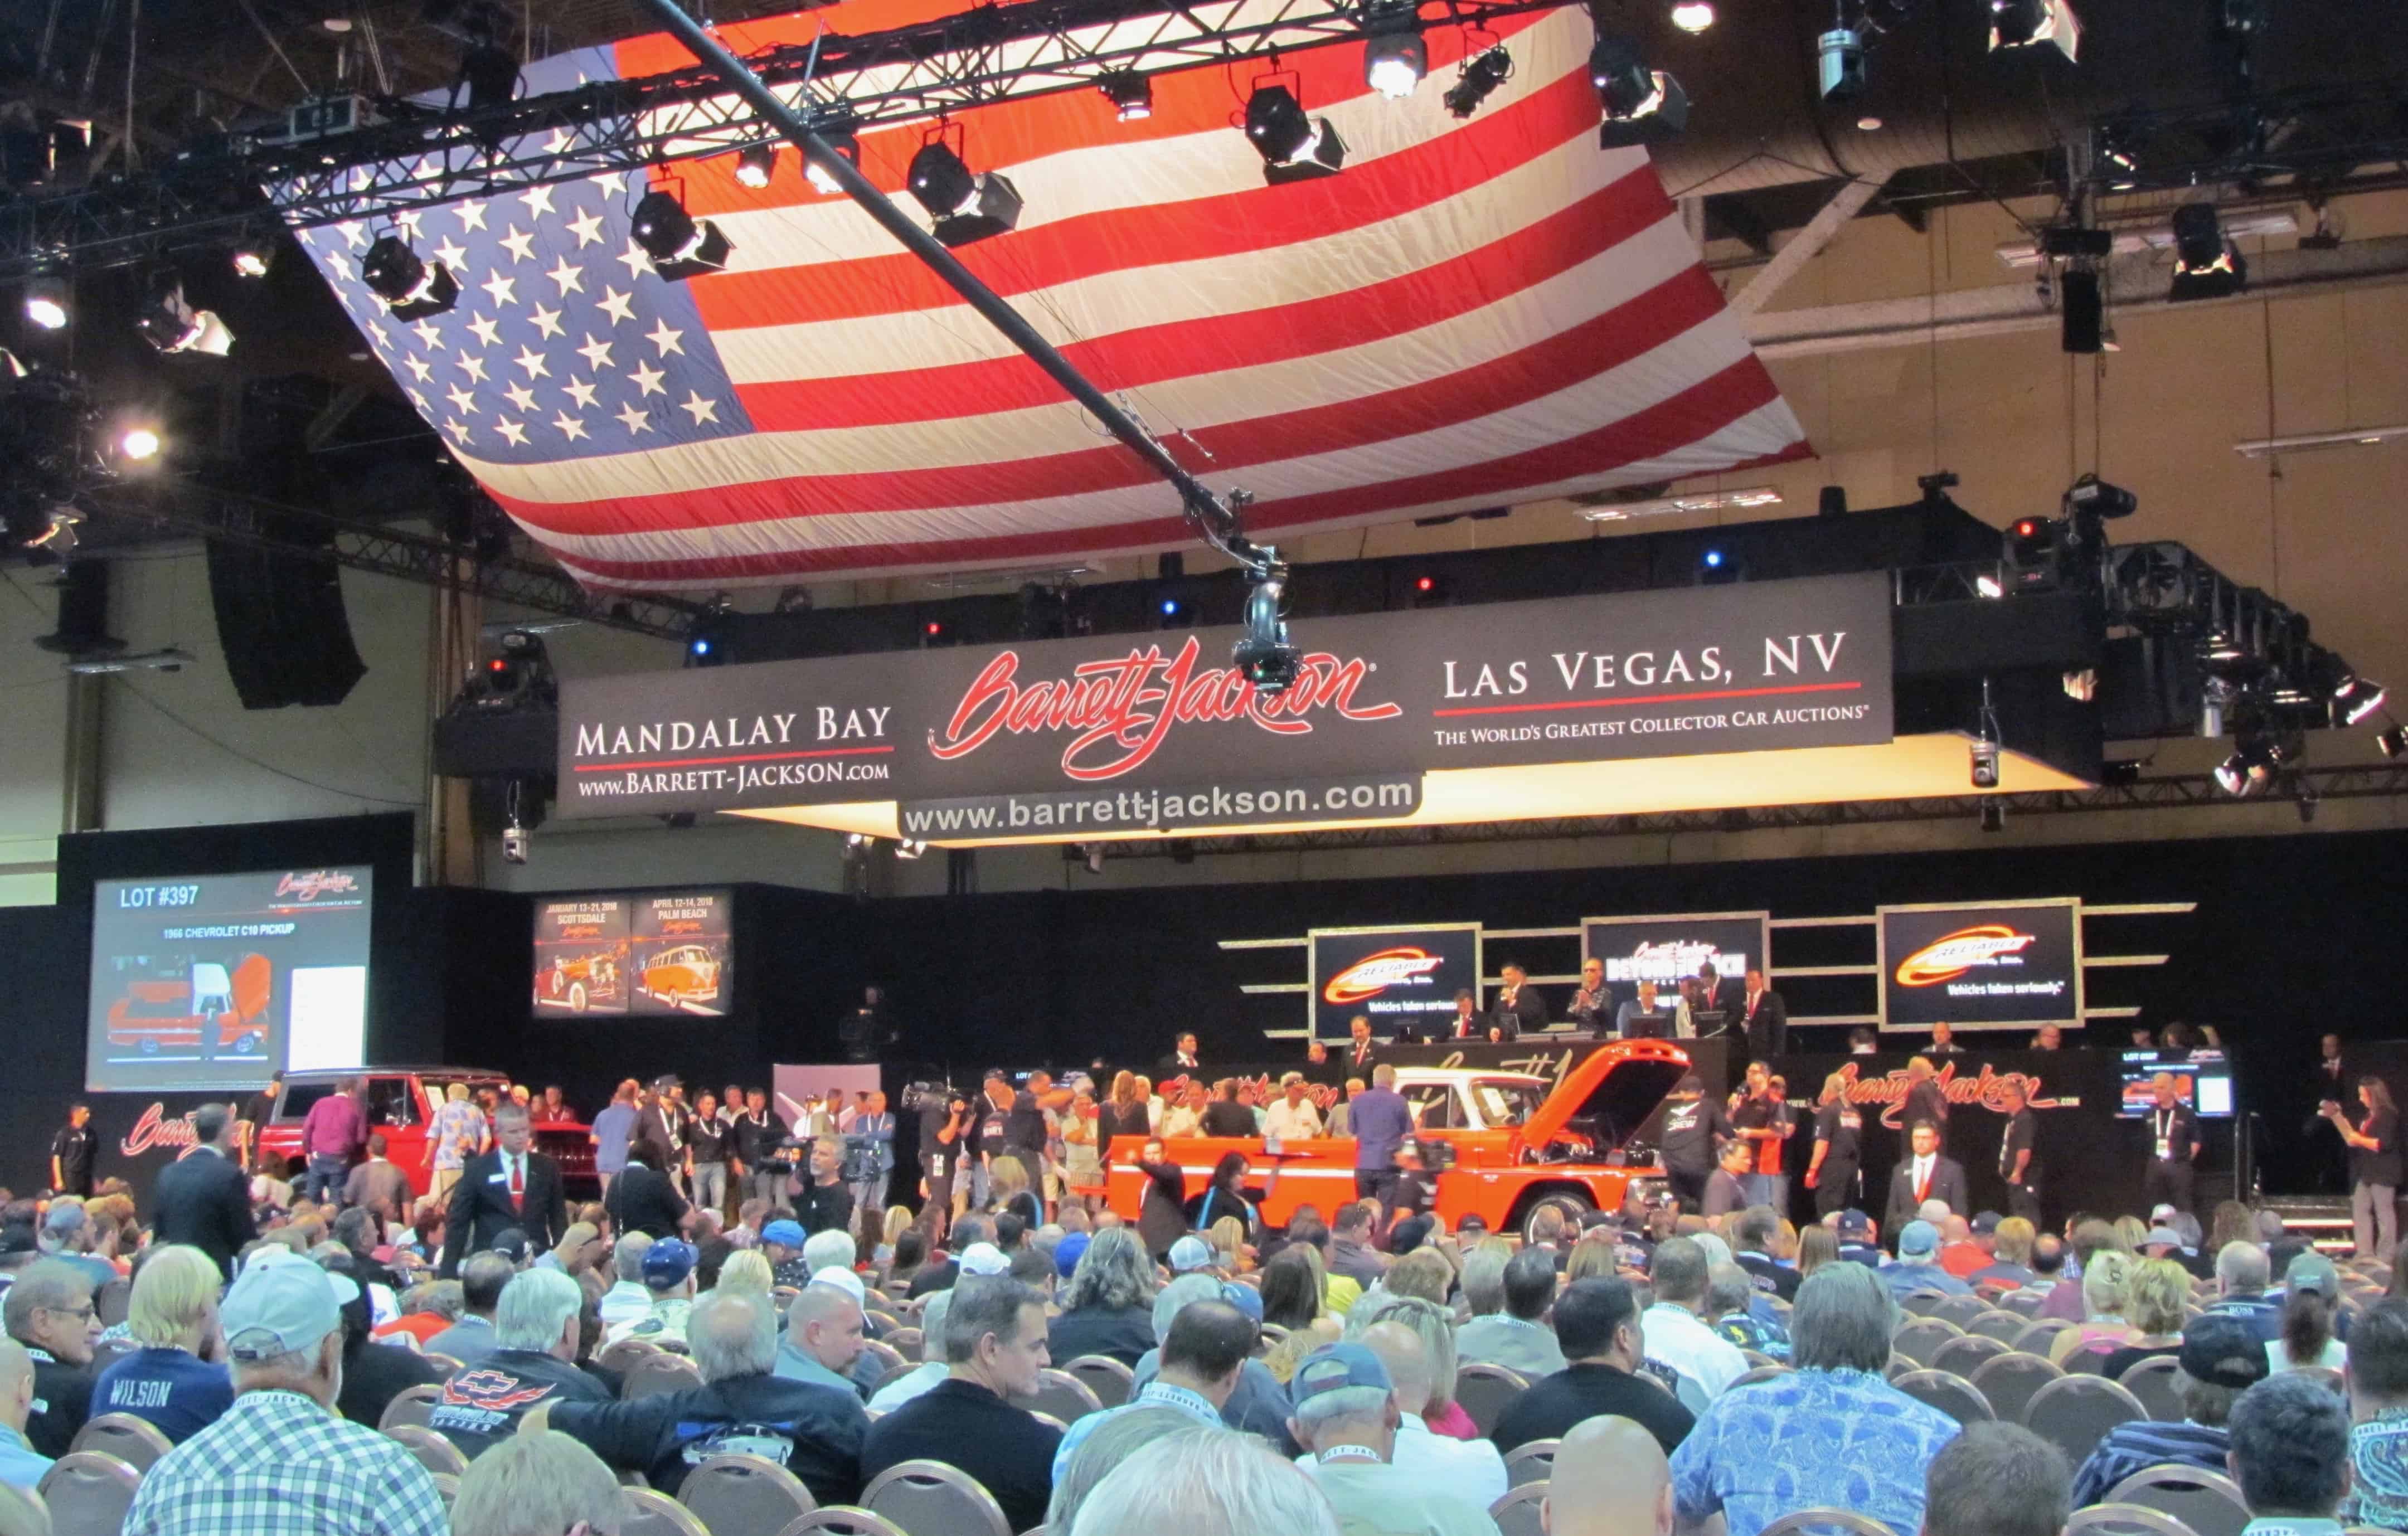 Las Vegas emerges as a major auction venue Journal